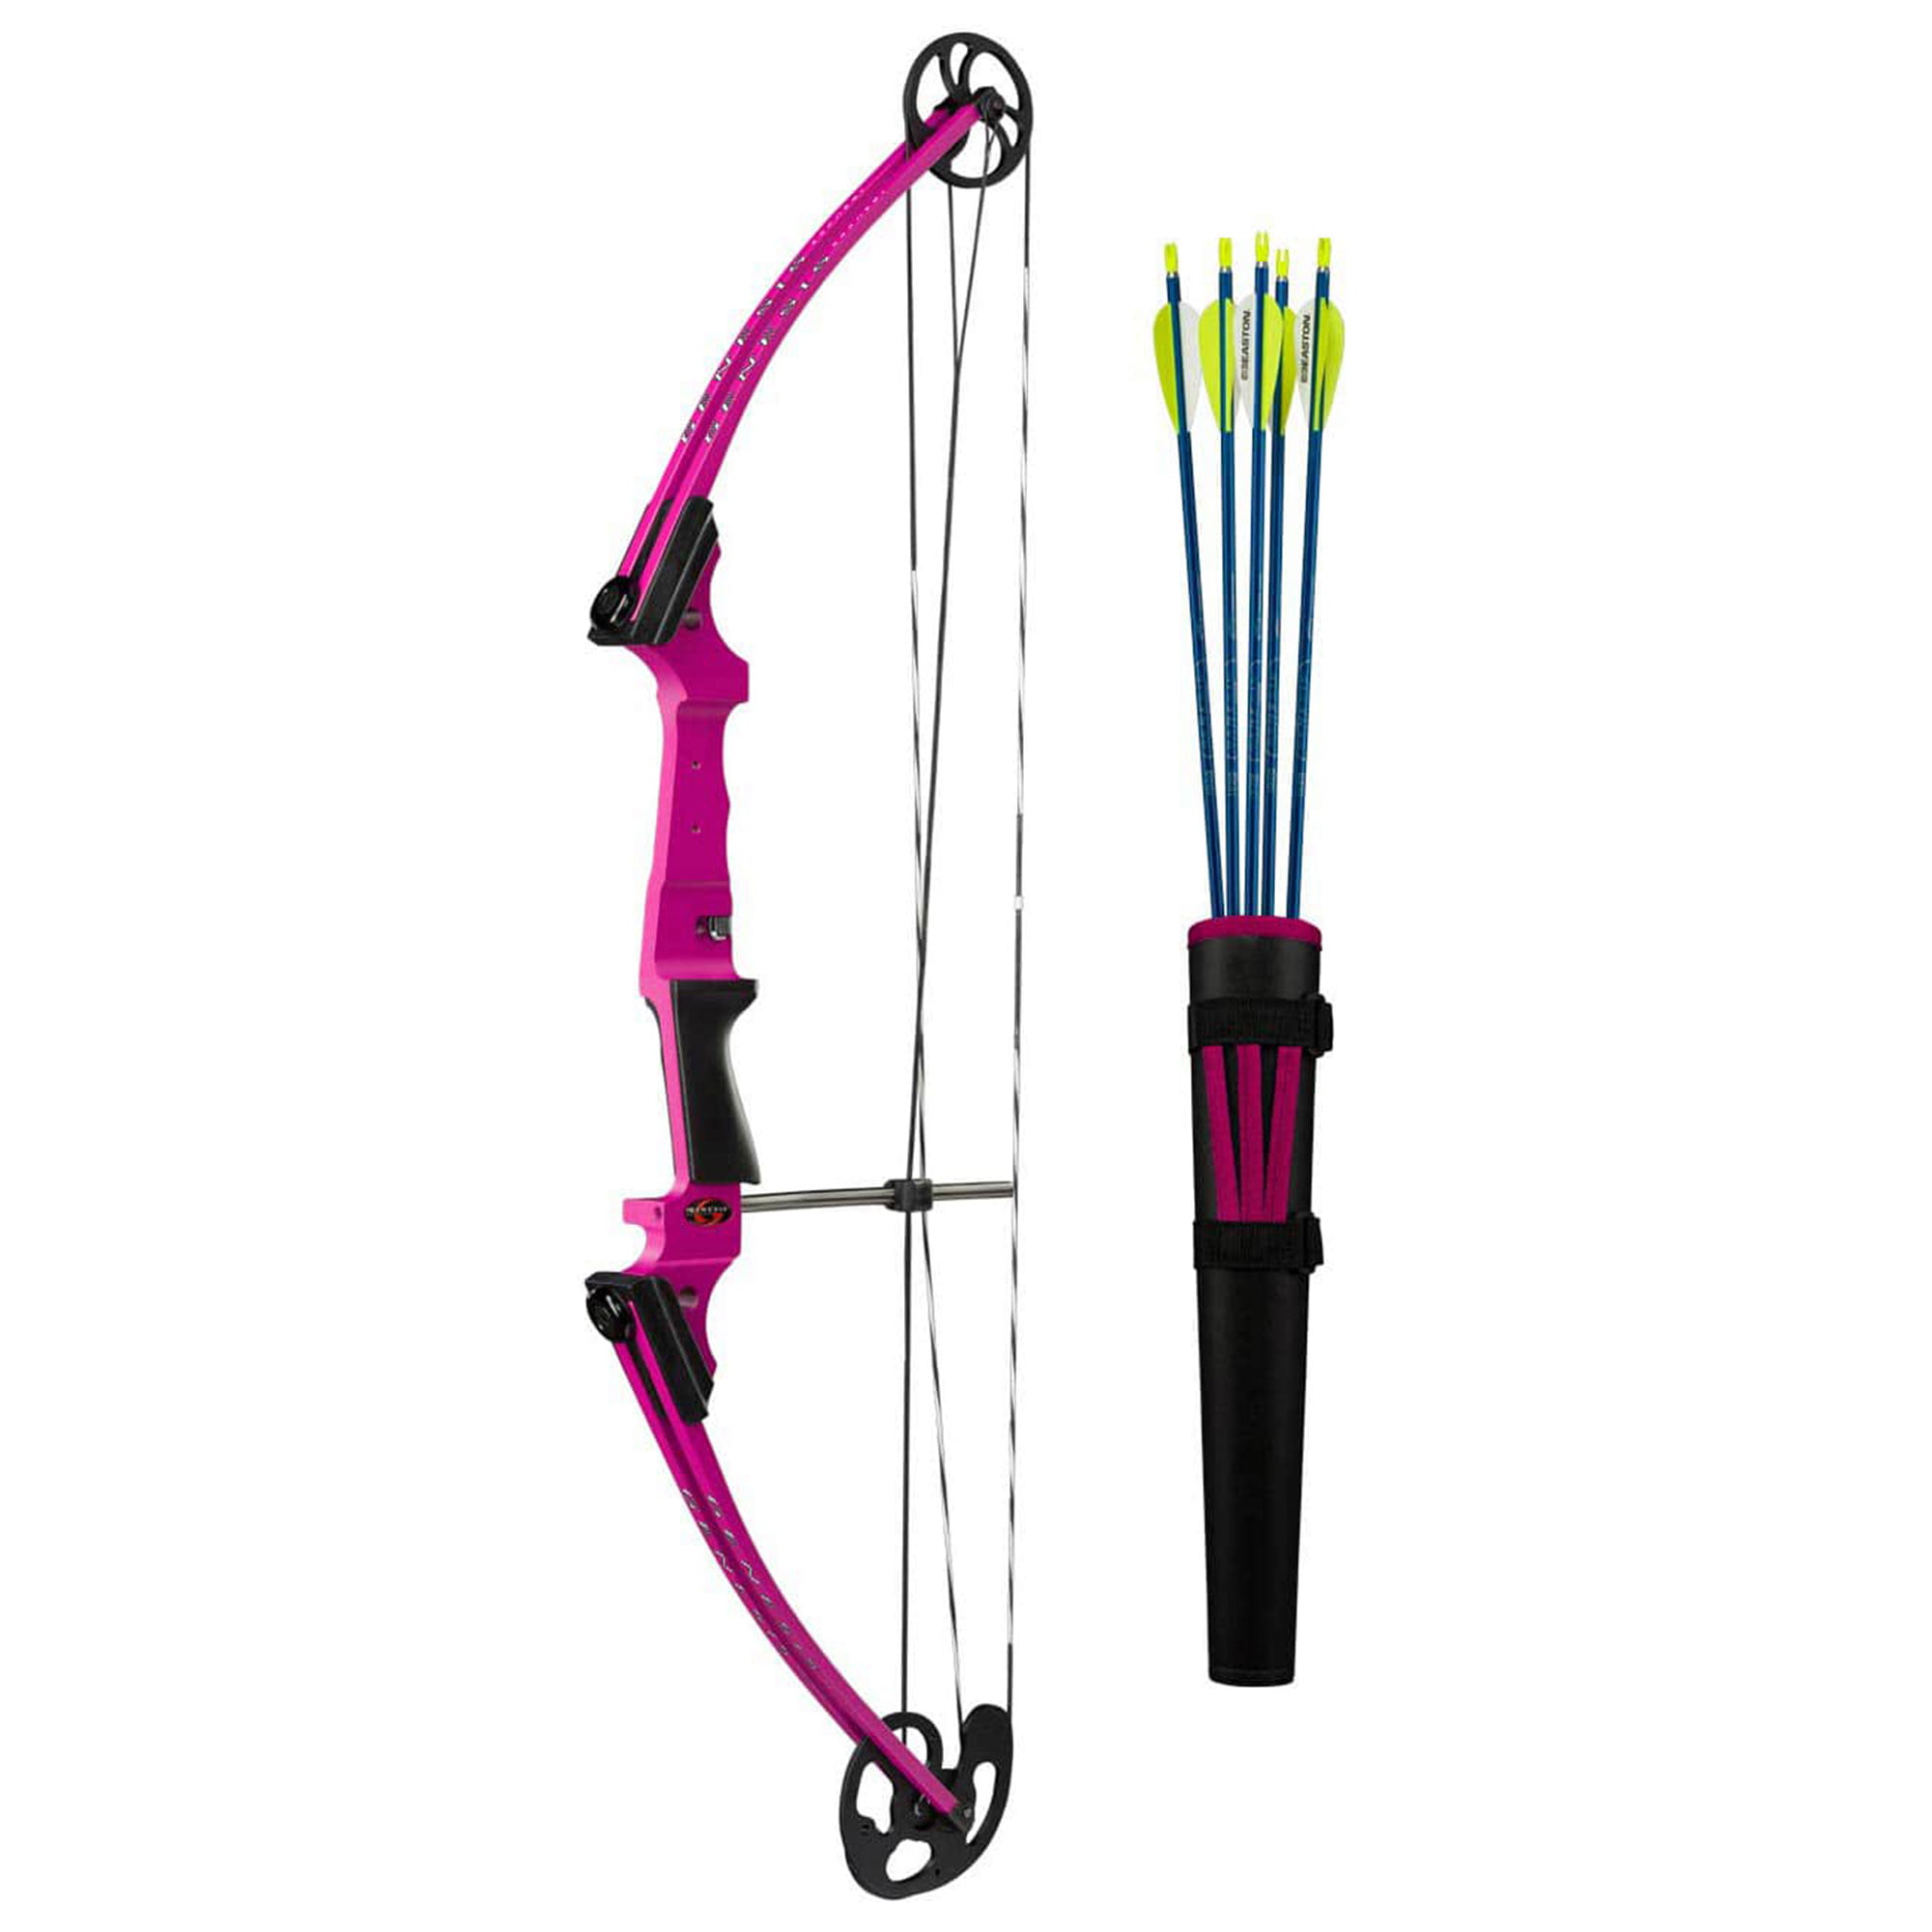 10 Pieces Archery Premium Bow String Wax Compounds Recurve Bow 